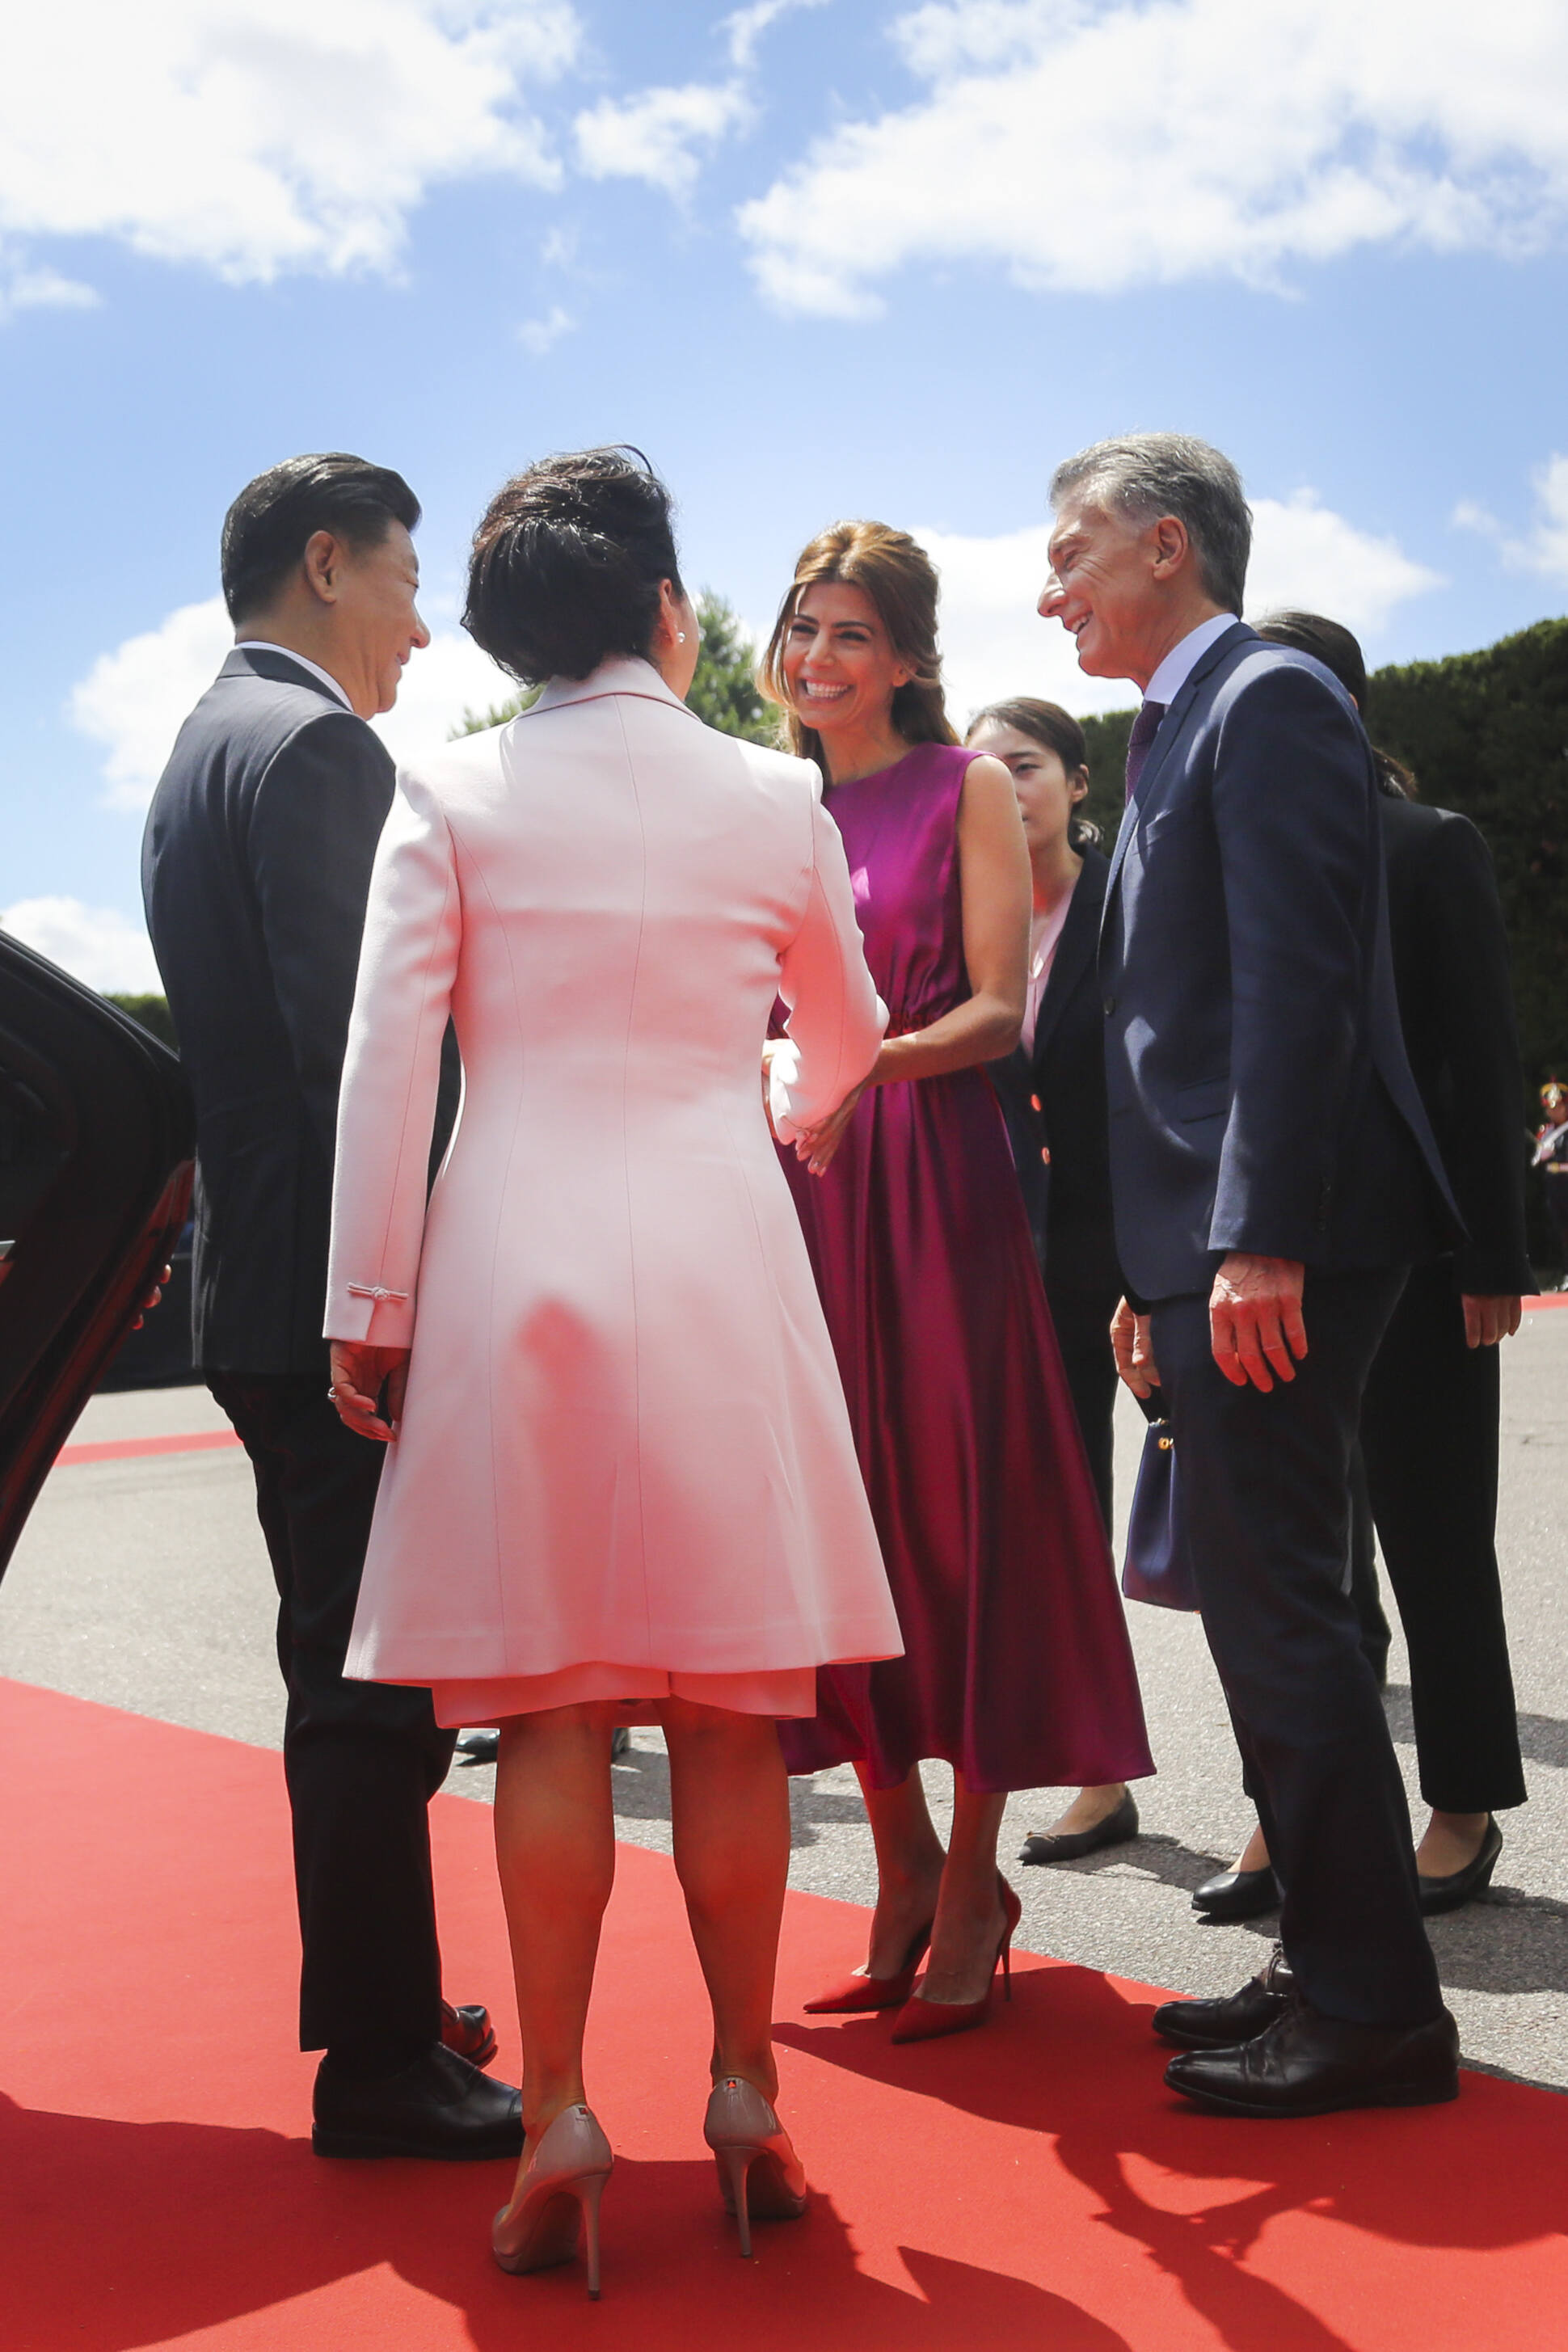 El presidente Macri y la primera dama recibieron en Olivos al presidente de China